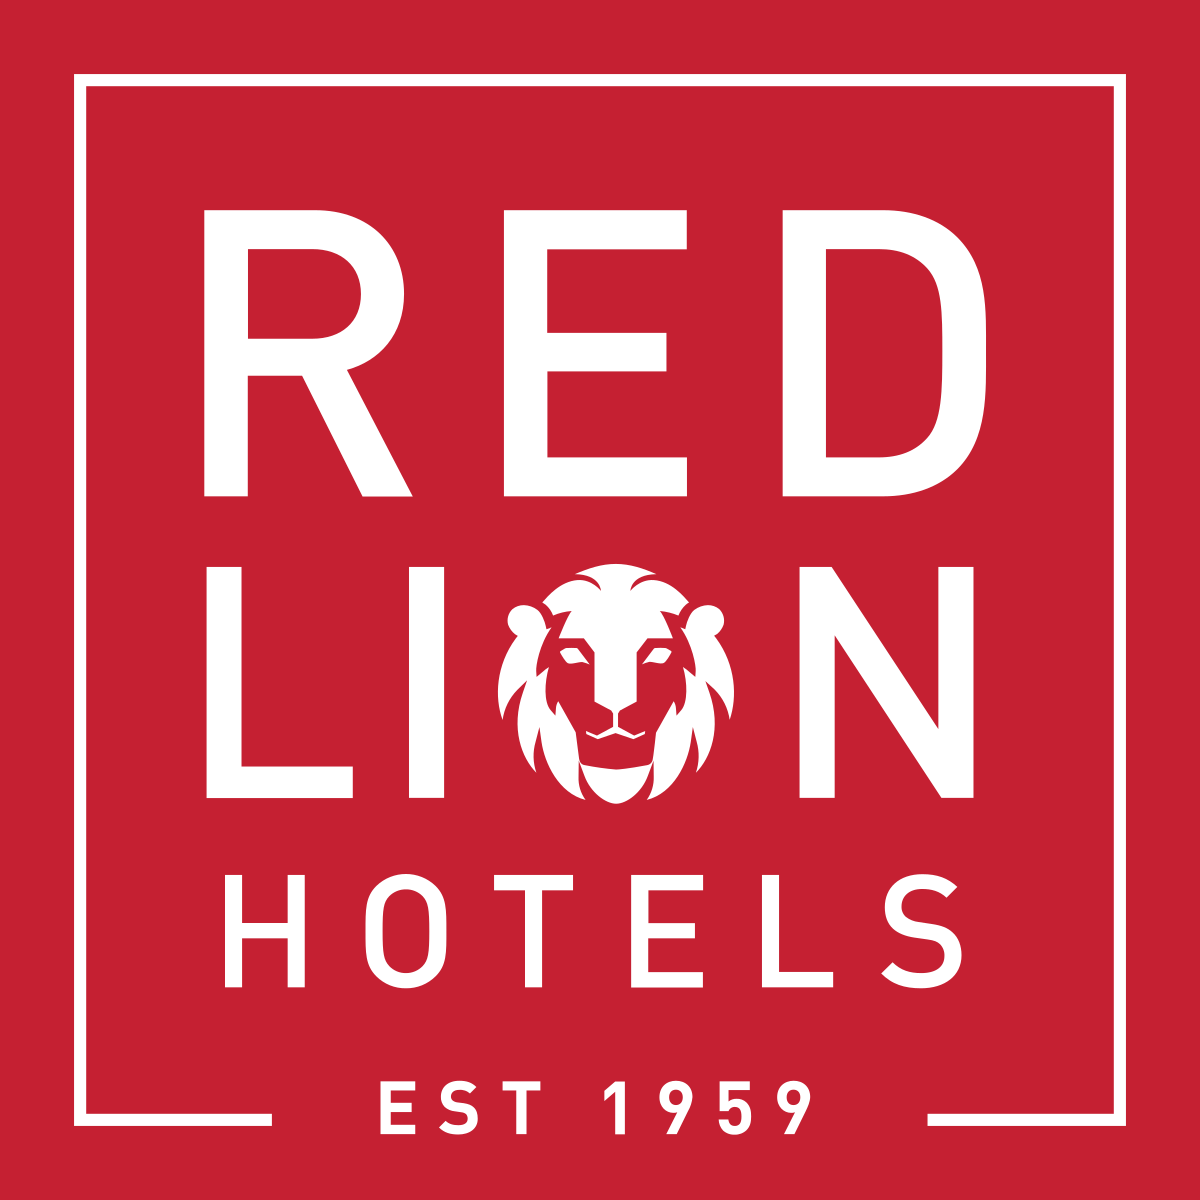 Lion Hotel Logo - Red Lion Hotels